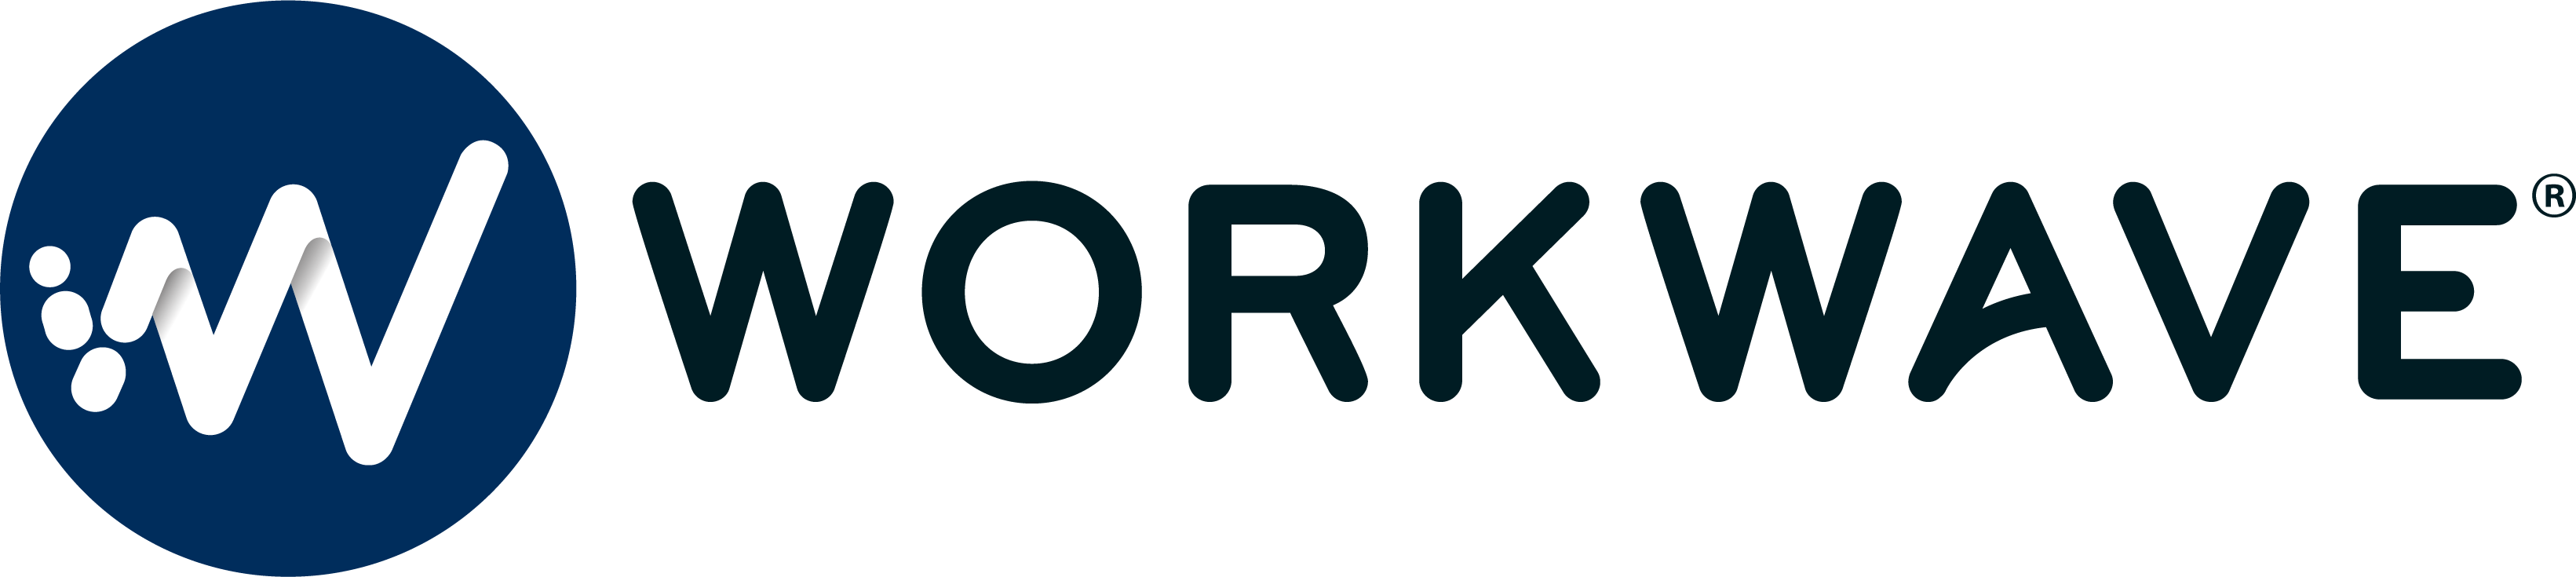 WorkWave Partner Portal